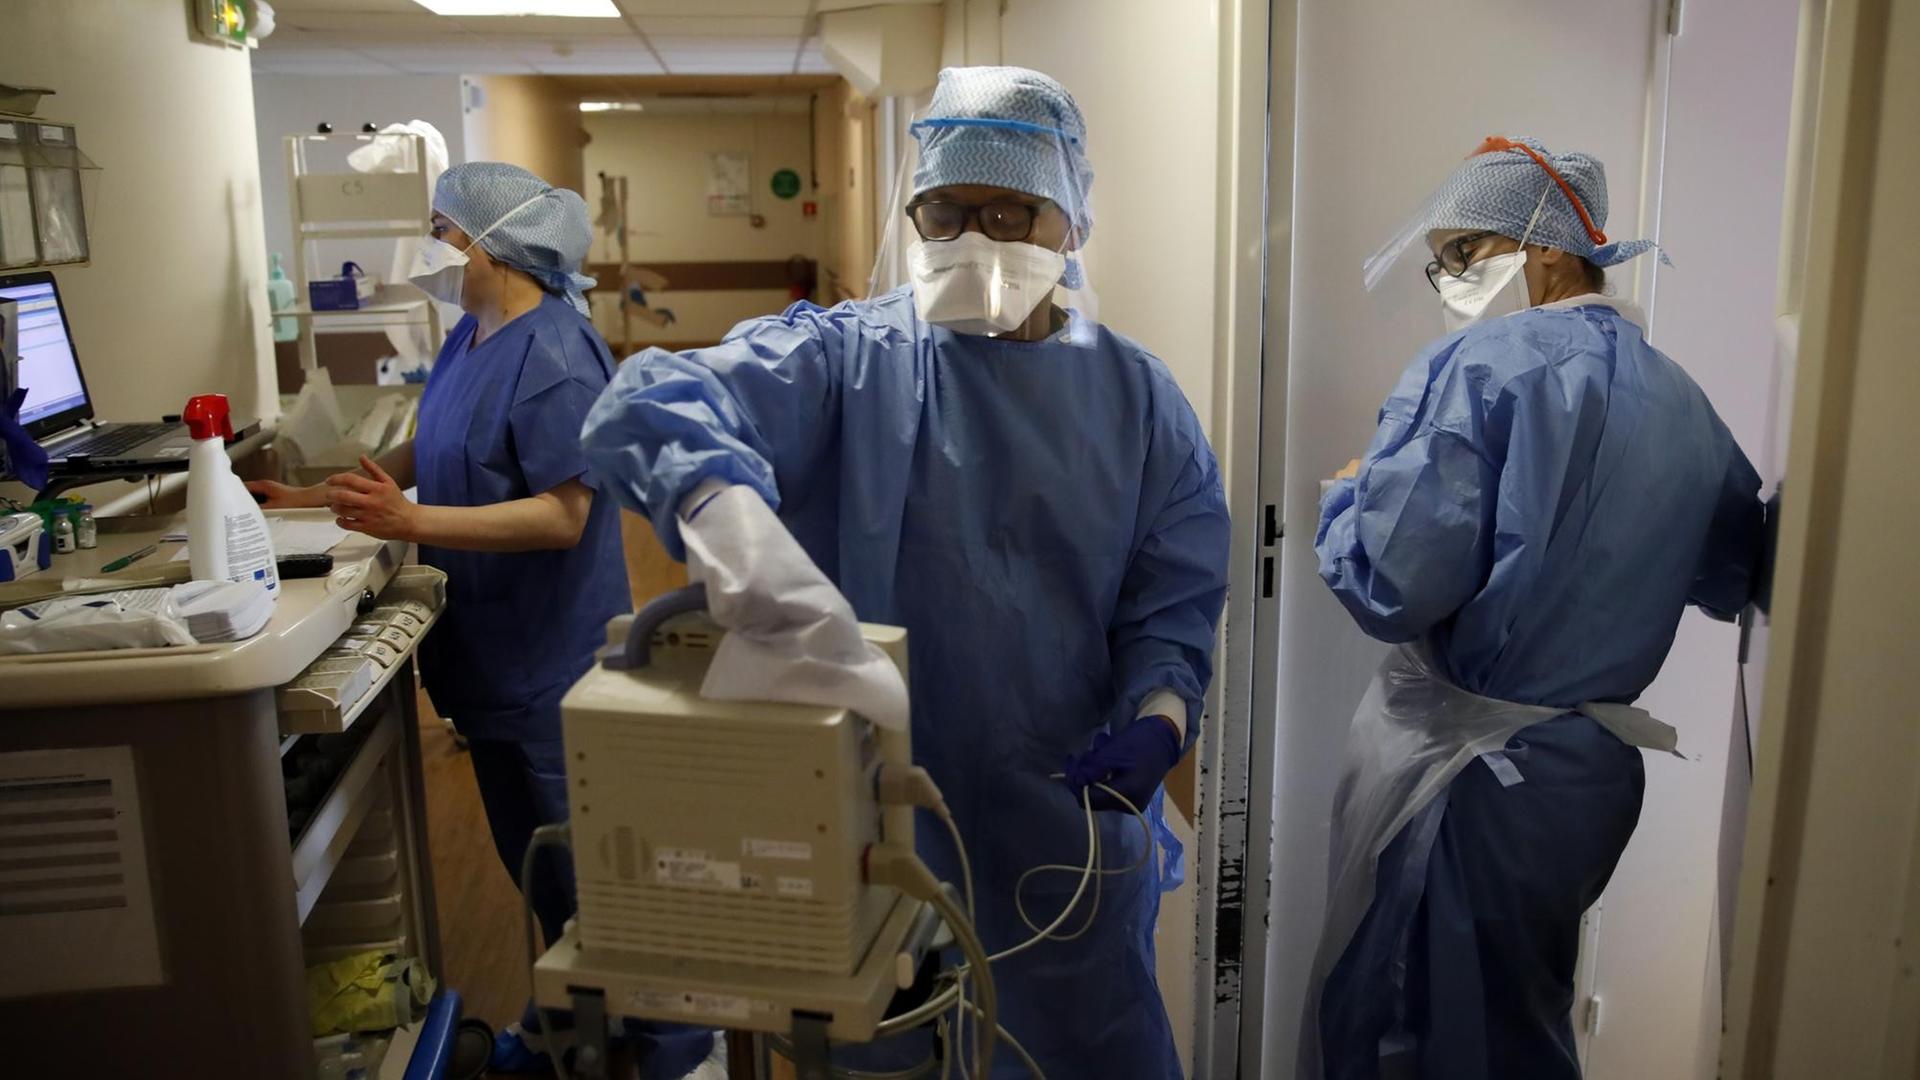 Medizinisches Personal in Schutzkleidung in einem Krankenhaus in Paris, in dem Covid-19-Patienten behandelt werden. Eine Person desinfiziert ein technisches Gerät.